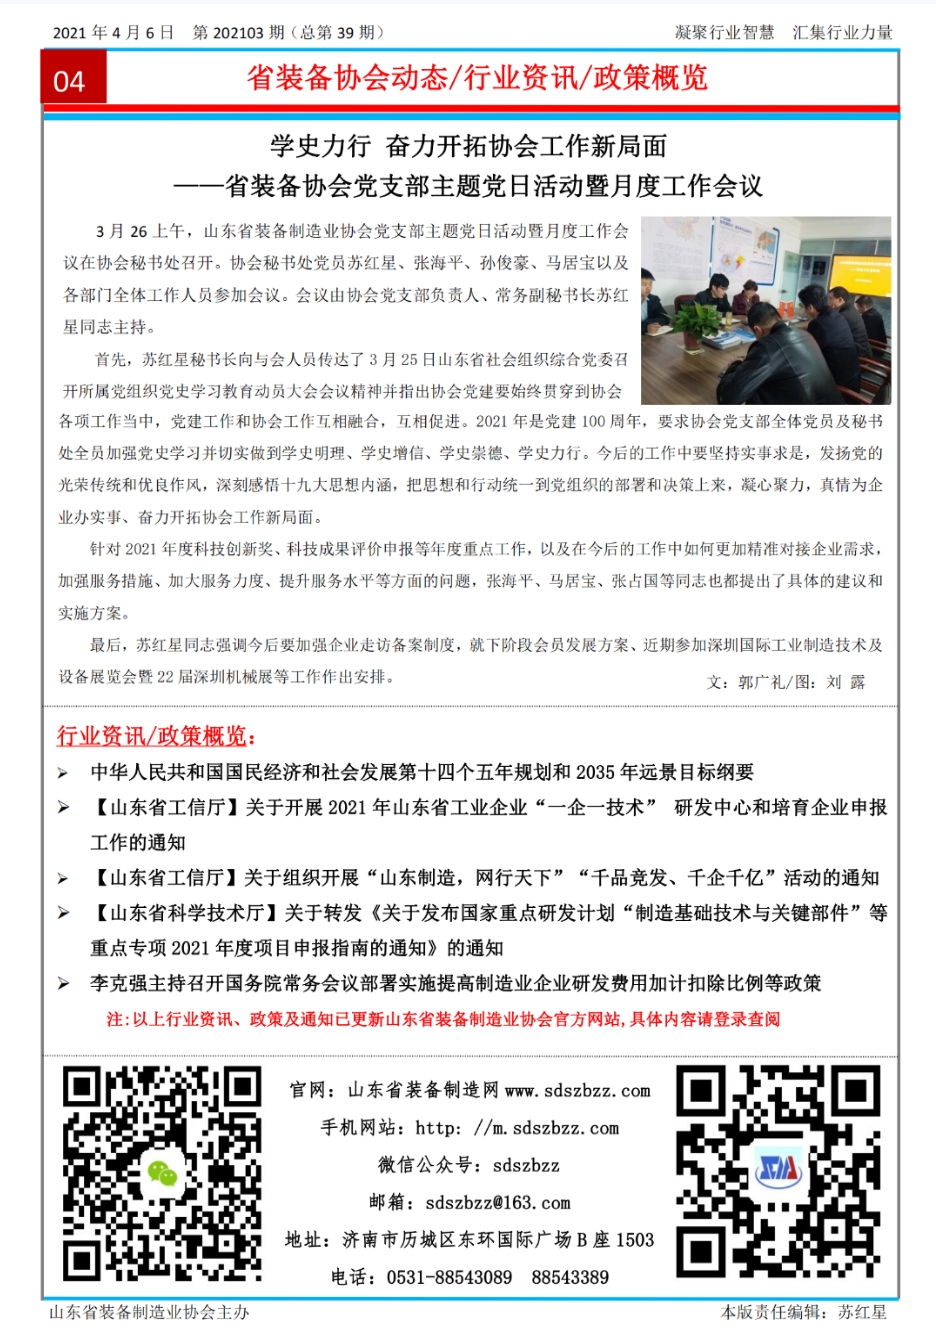 山东省装备制造业协会简报2021年第3期第4版